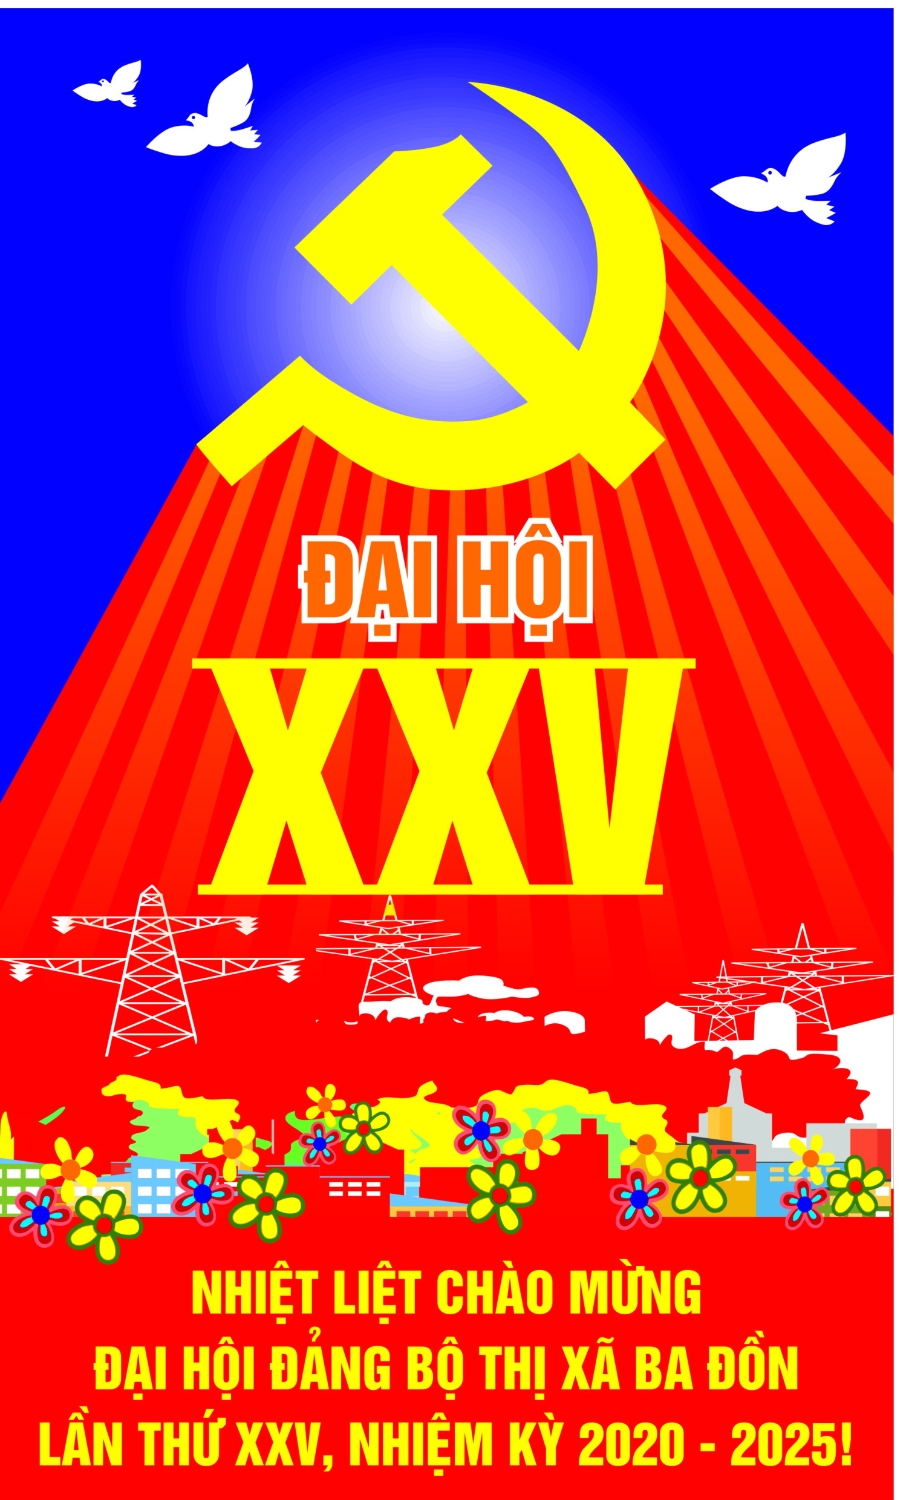 Thị xã Ba Đồn: Sôi nổi thi đua chào mừng Đại hội  Đảng bộ thị xã lần thứ XXV